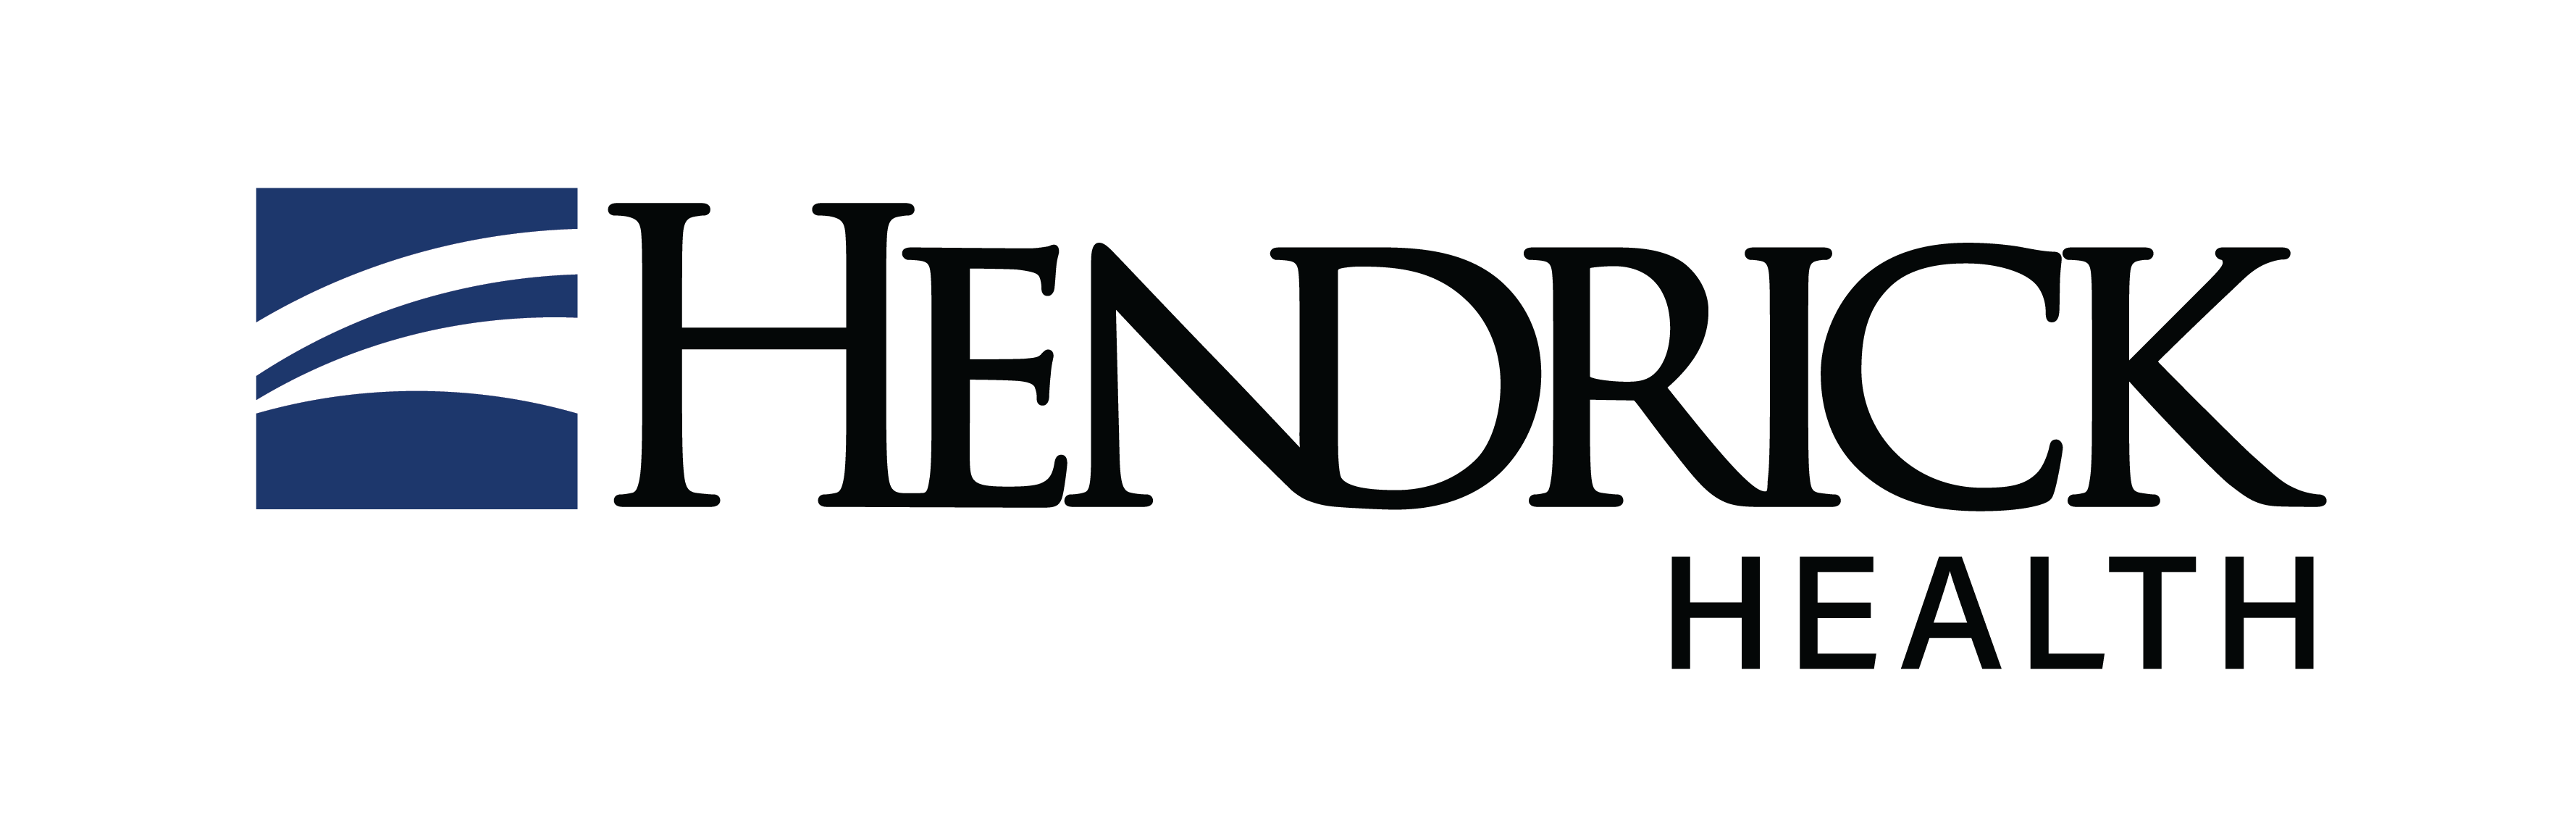 Hendrick Medical Supply - Abilene logo